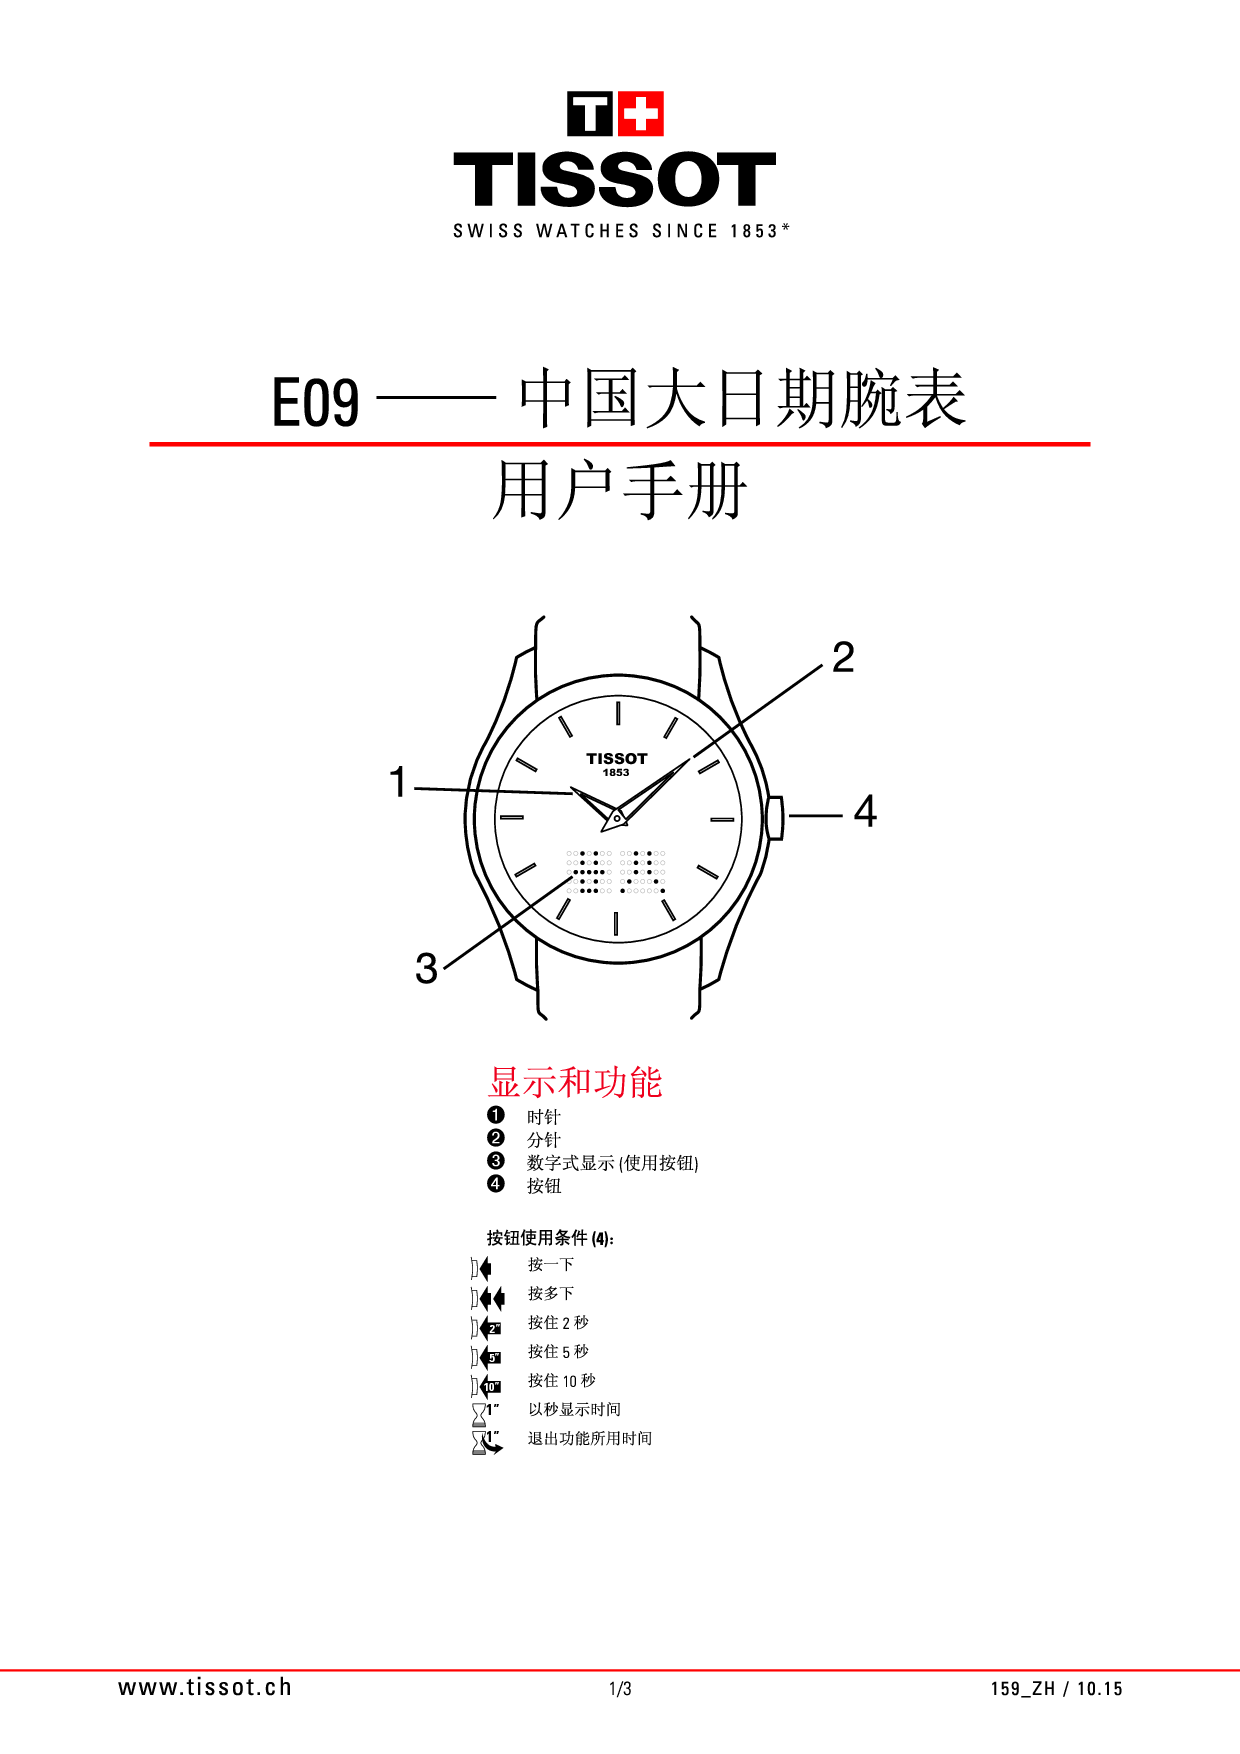 天梭 Tissot E09 中国大日期腕表 用户手册 封面